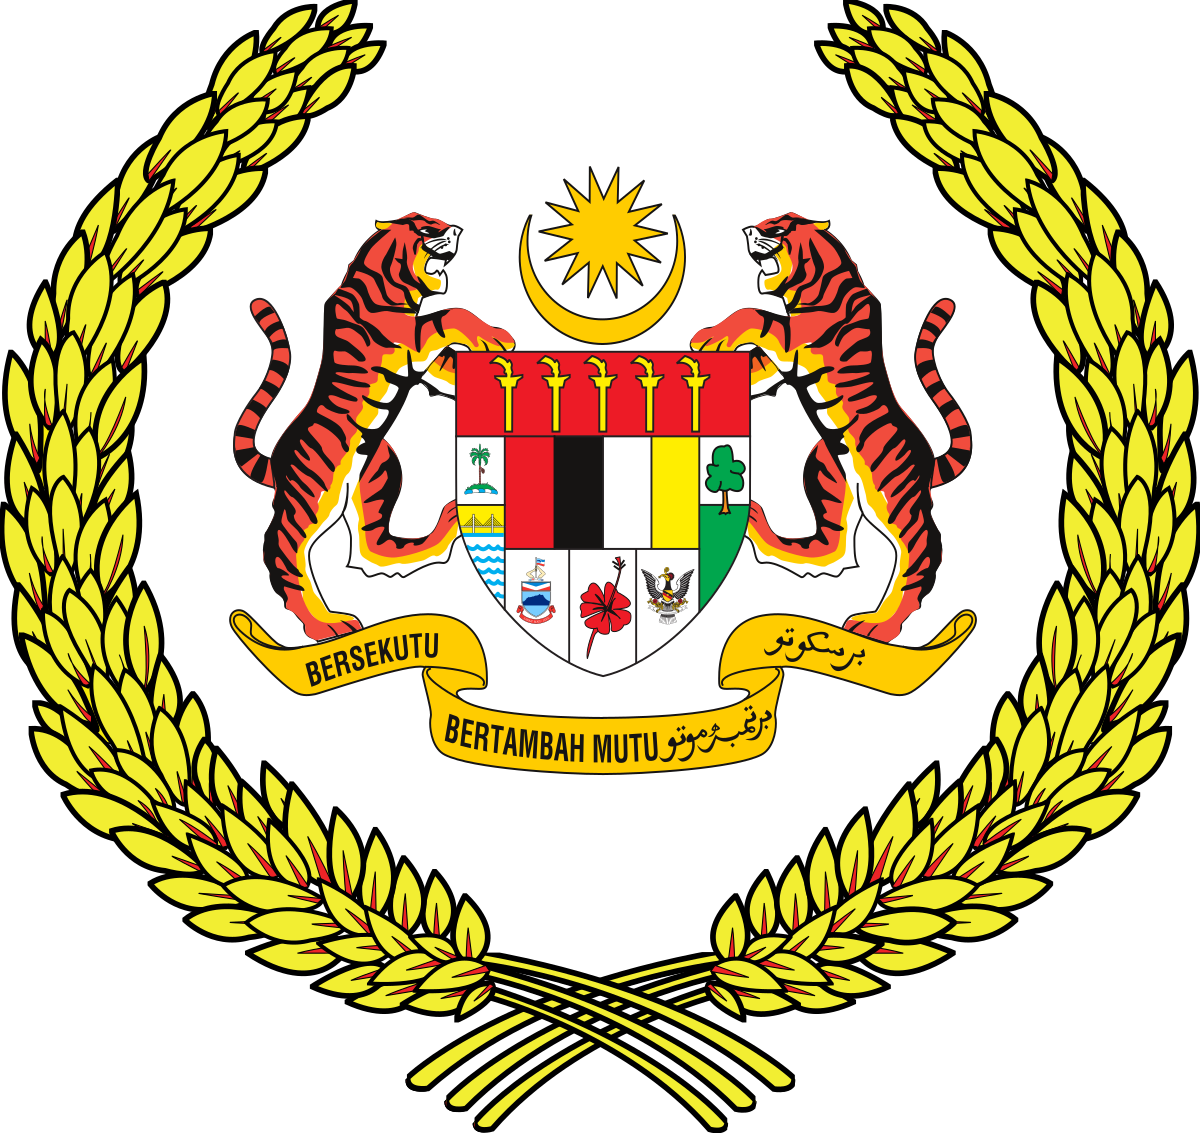 Siapakah ketua negara malaysia